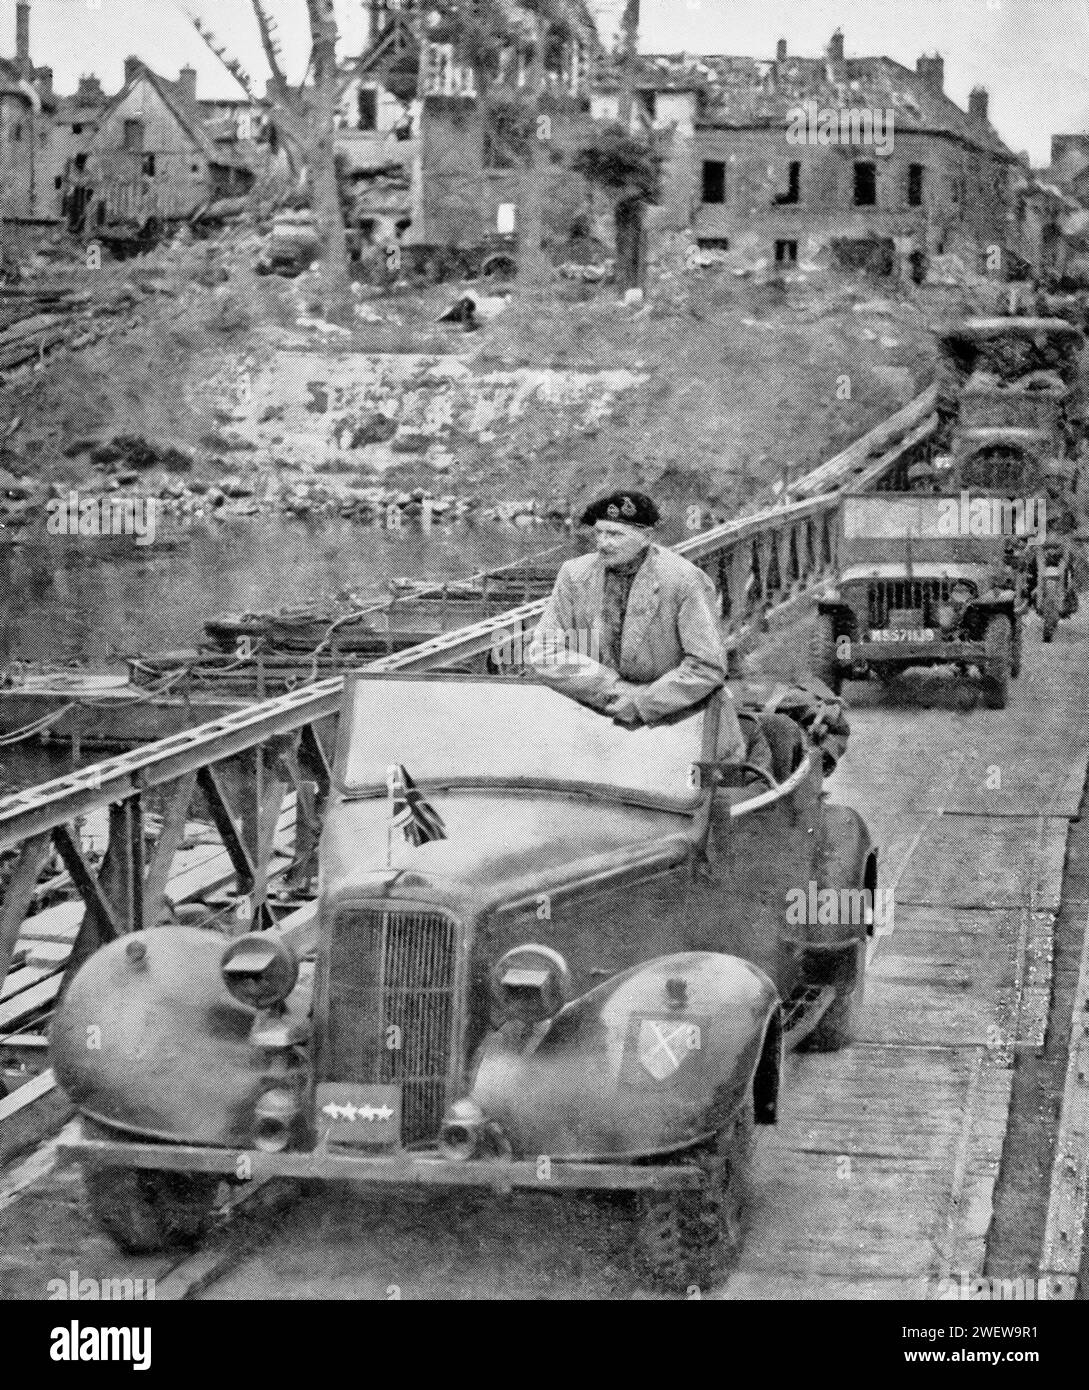 Le général Montgomery traverse la Seine à la fin du mois d'août 1944, suite à l'invasion alliée de l'Europe pendant la Seconde Guerre mondiale. Banque D'Images